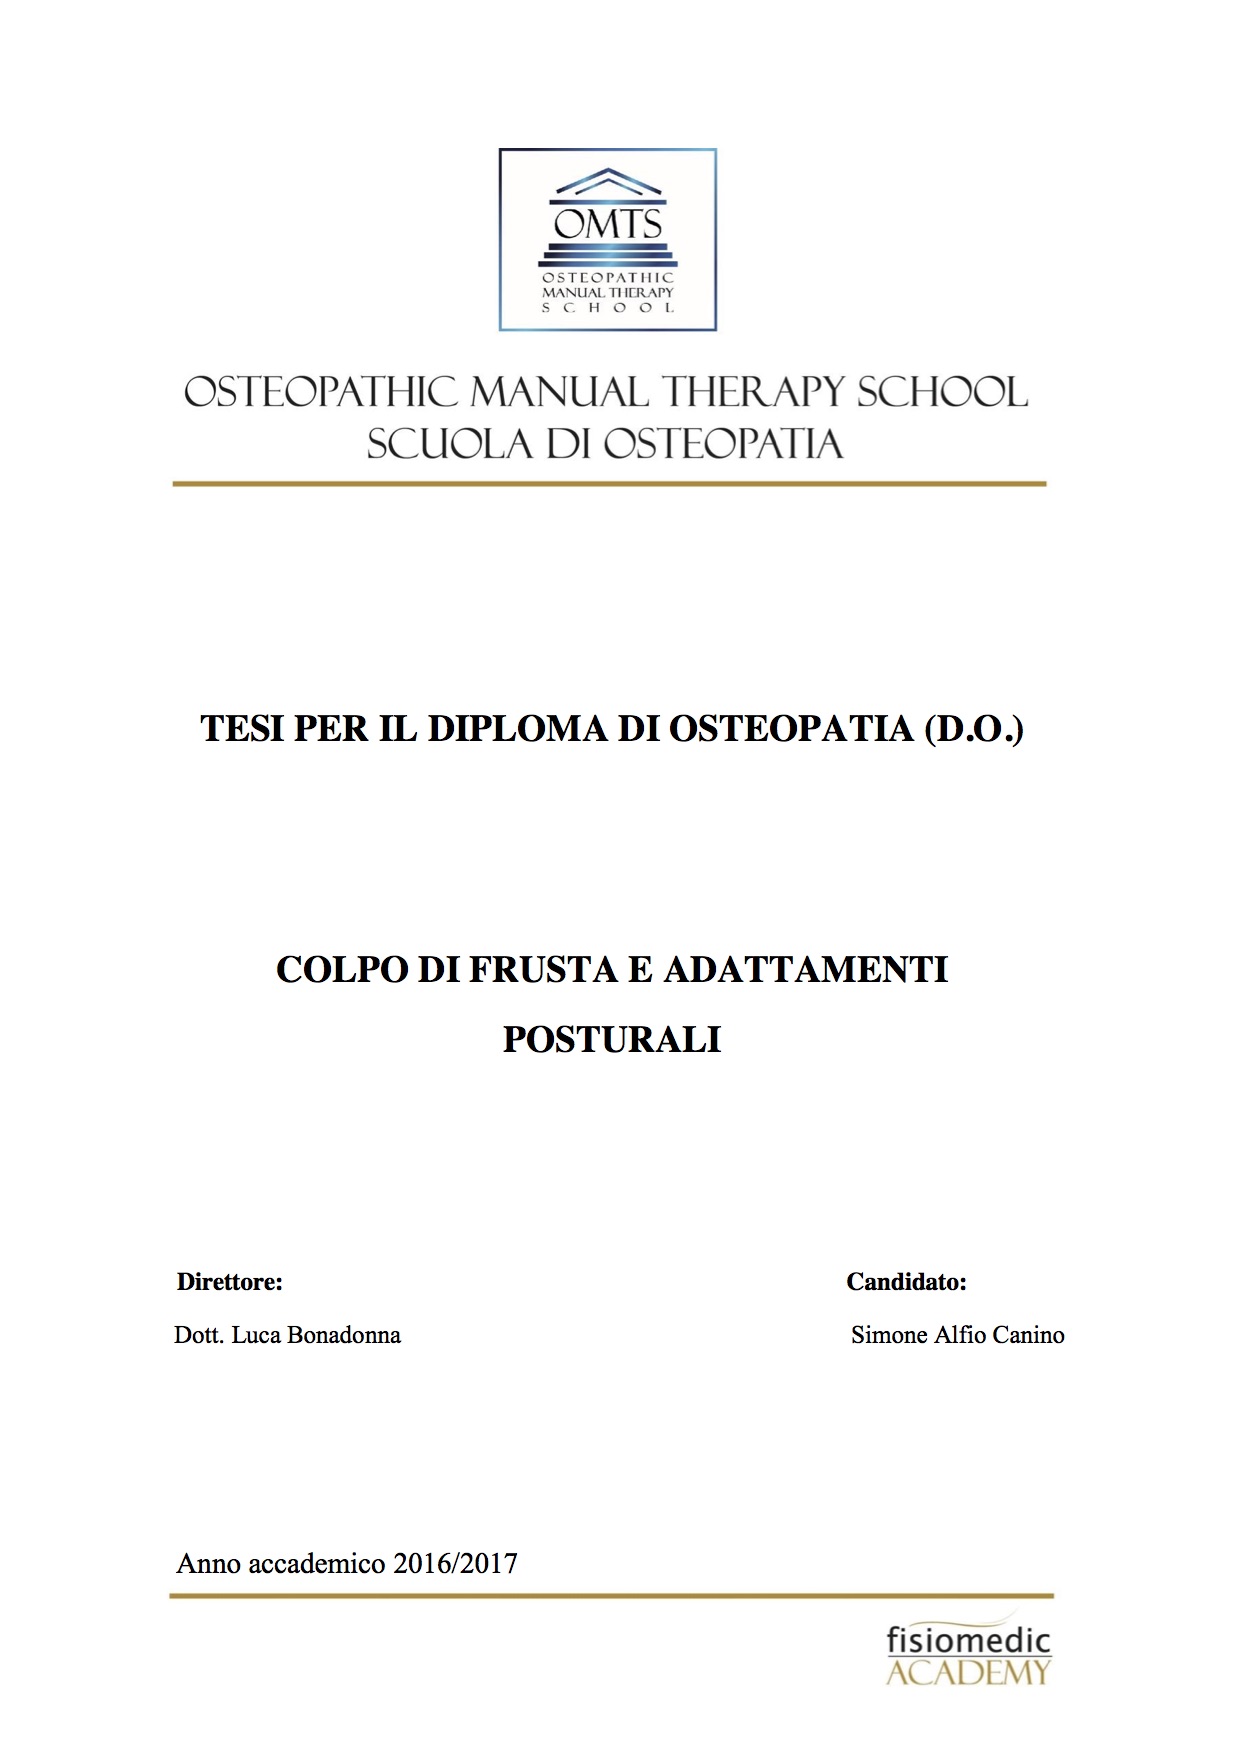 Simone Canino Tesi Diploma Osteopatia 2017